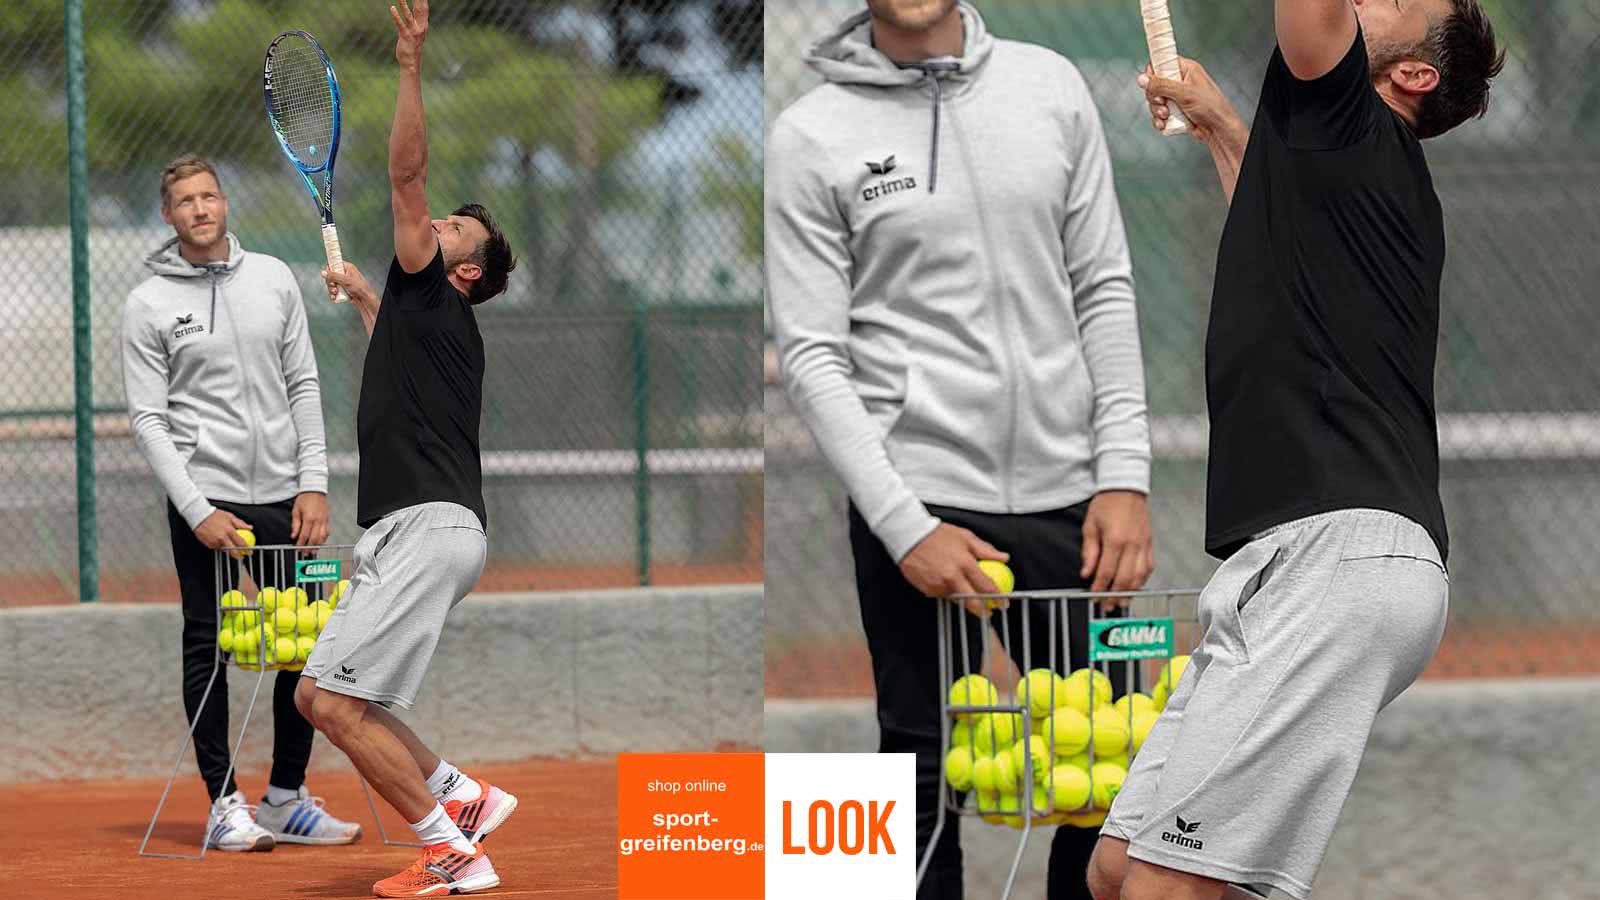 Das Erima Tennis Outfit Summer mit Shirt und Short